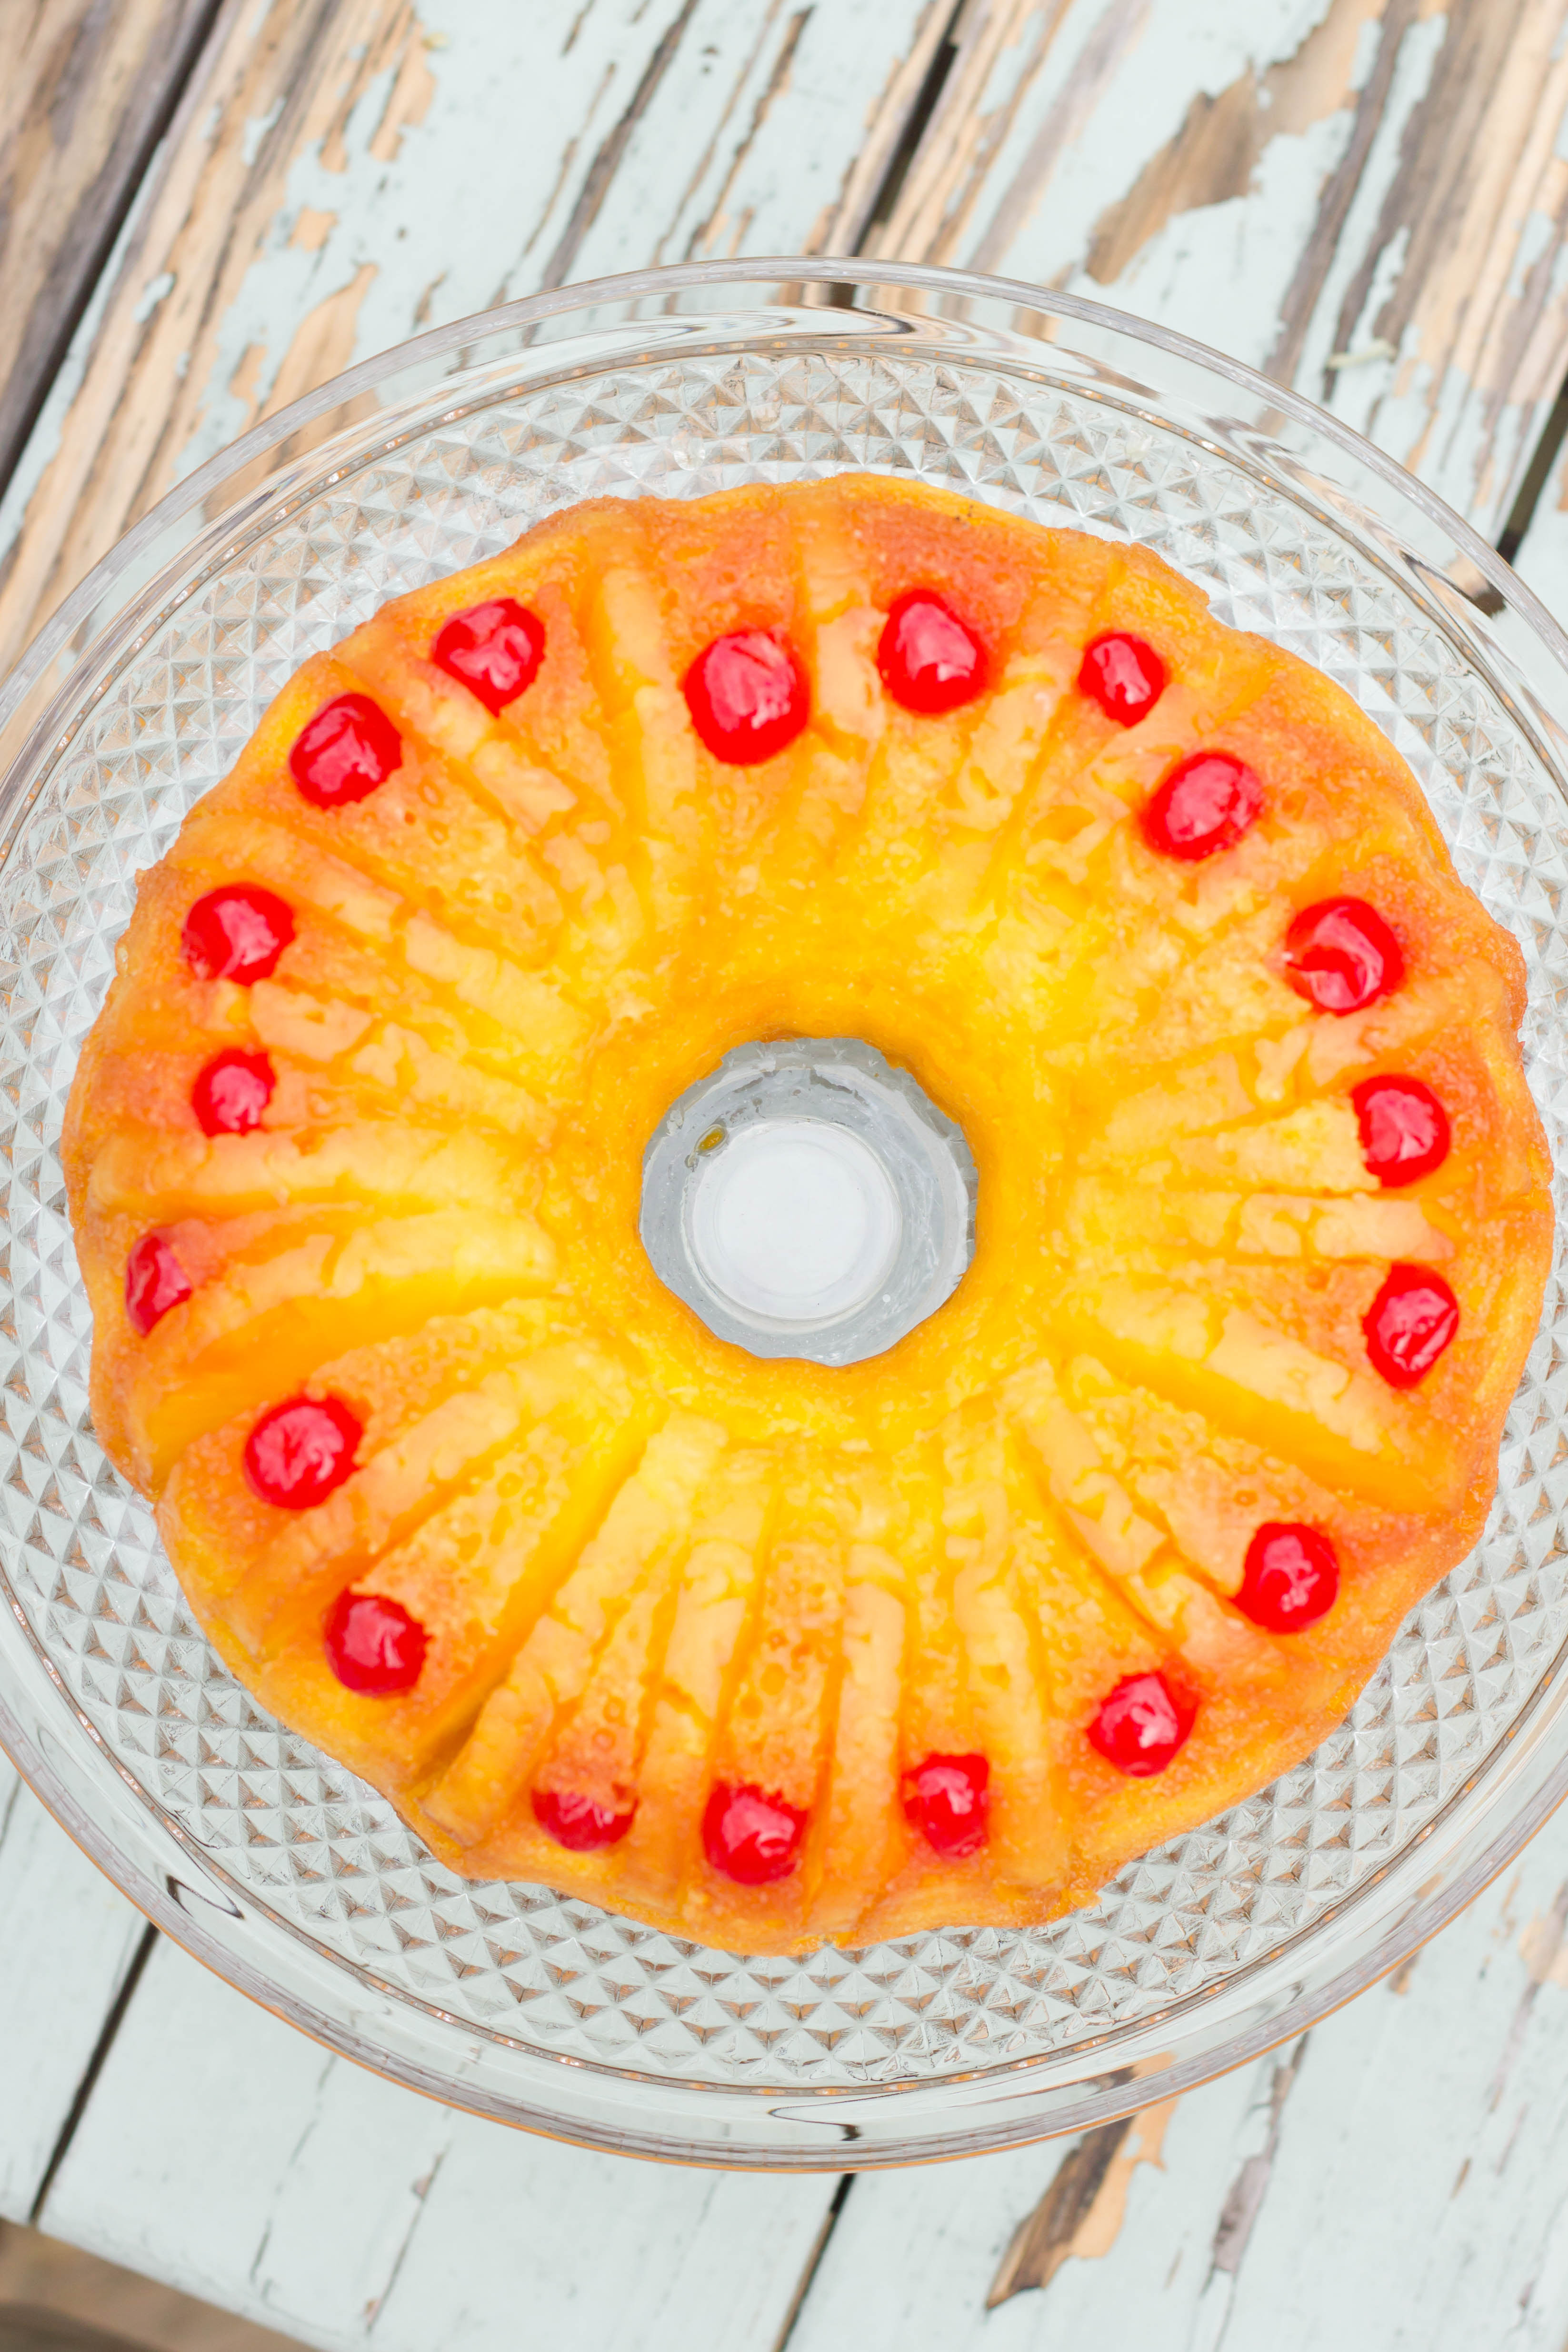 Easy Pineapple UpsideDown Cake Recipe Taste of Home